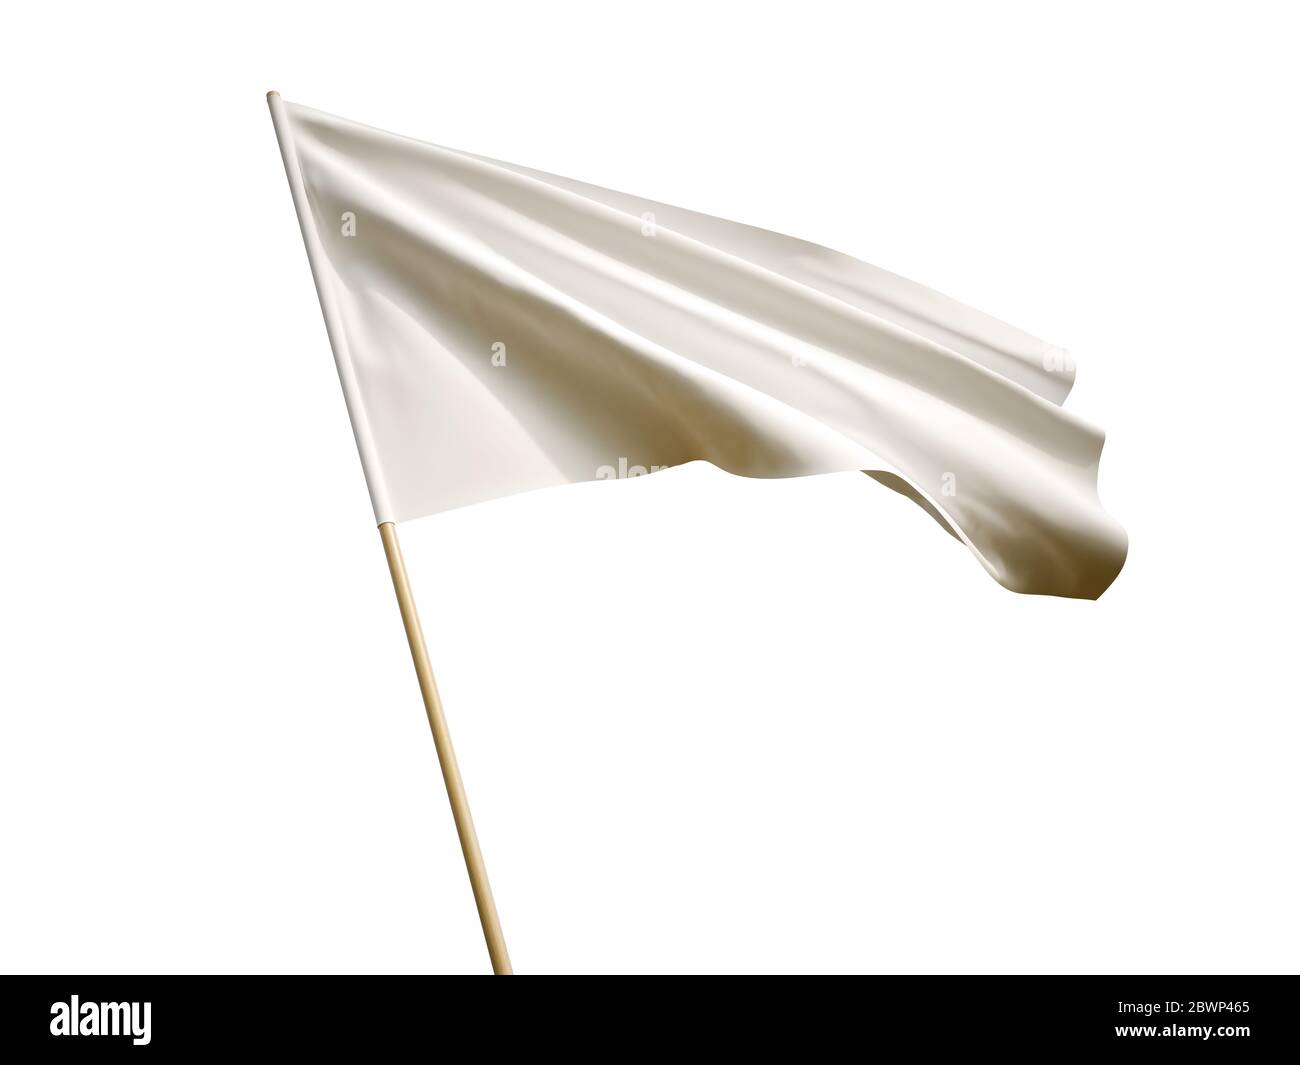 Immagine 3D con bandiera bianca ondulata su sfondo bianco Foto Stock